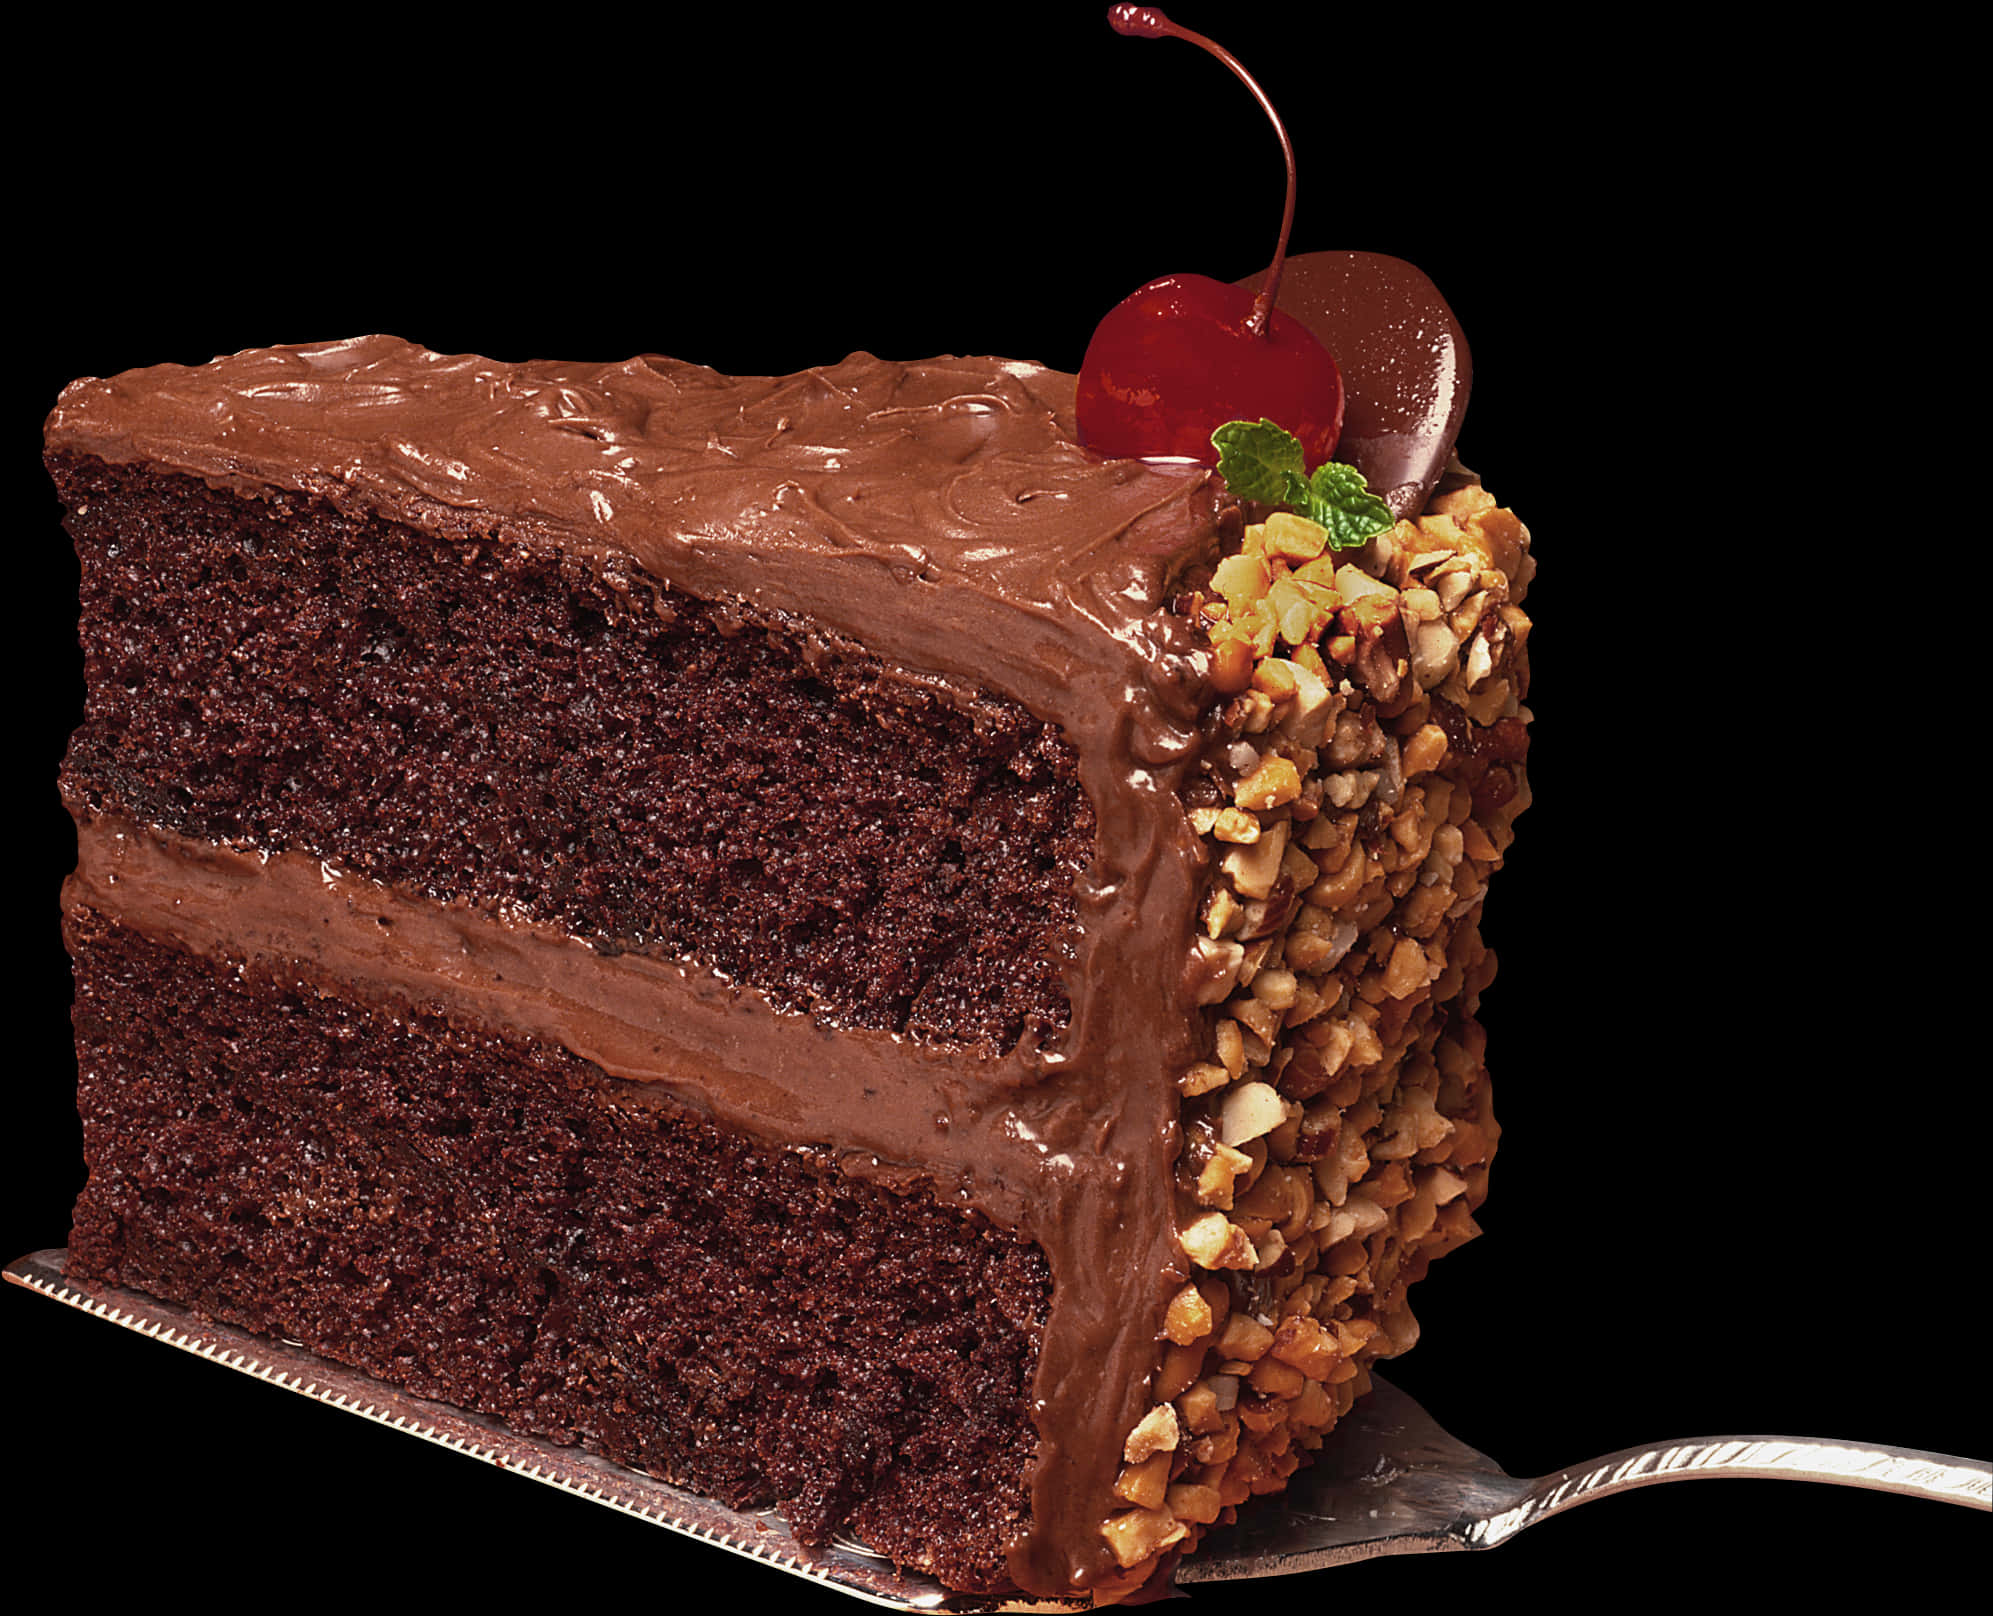 Chocolate Cake With Cherries